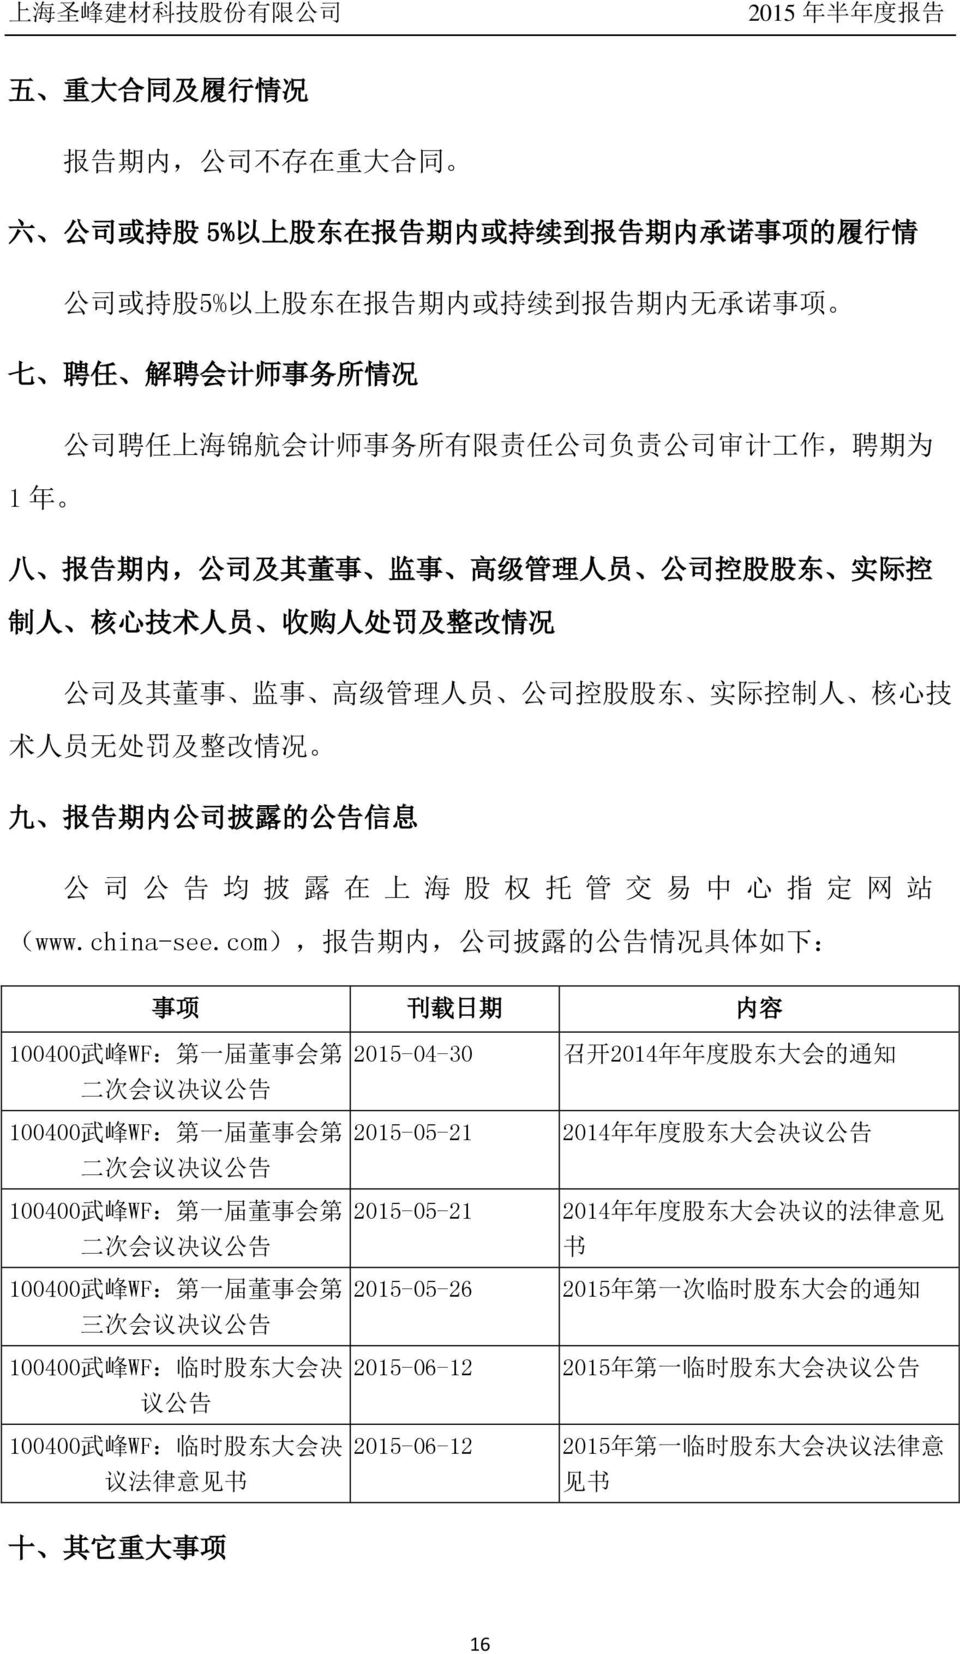 控 制 人 核 心 技 术 人 员 无 处 罚 及 整 改 情 况 九 报 告 期 内 公 司 披 露 的 公 告 信 息 公 司 公 告 均 披 露 在 上 海 股 权 托 管 交 易 中 心 指 定 网 站 (www.china-see.